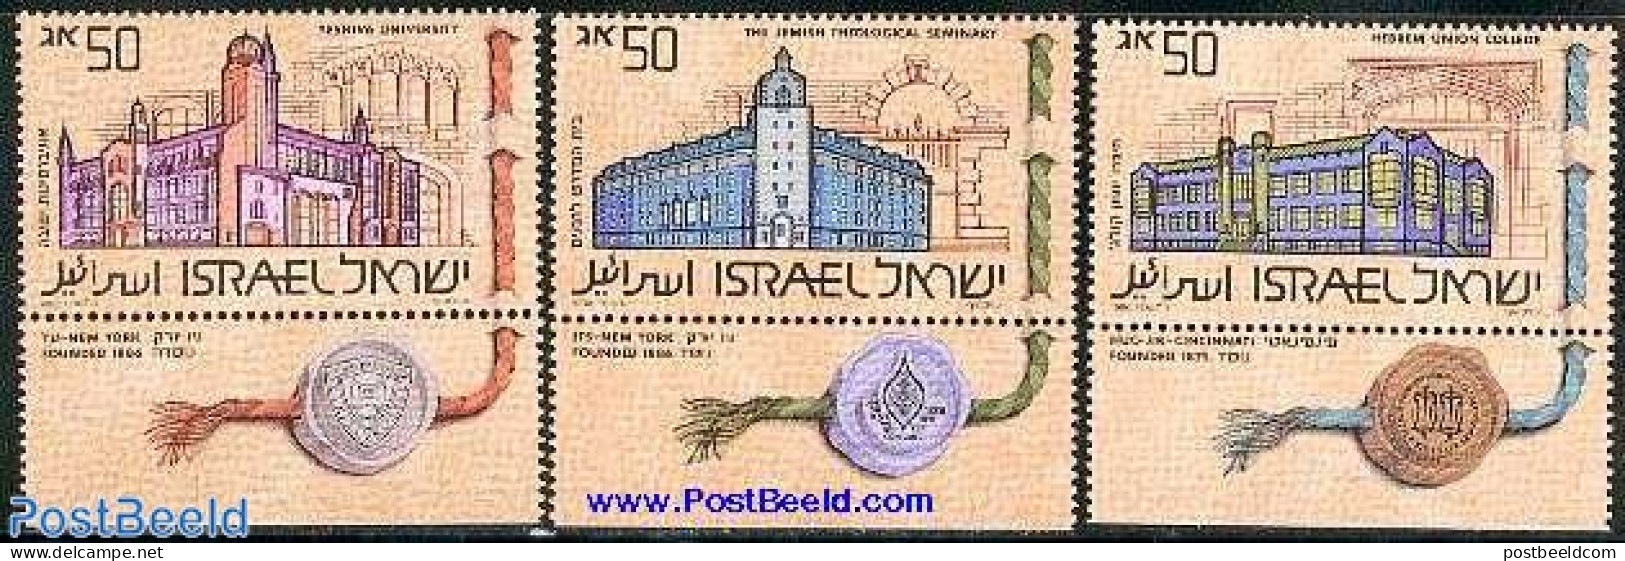 Israel 1986 Jewish Highschools 3v, Mint NH, Science - Education - Ungebraucht (mit Tabs)